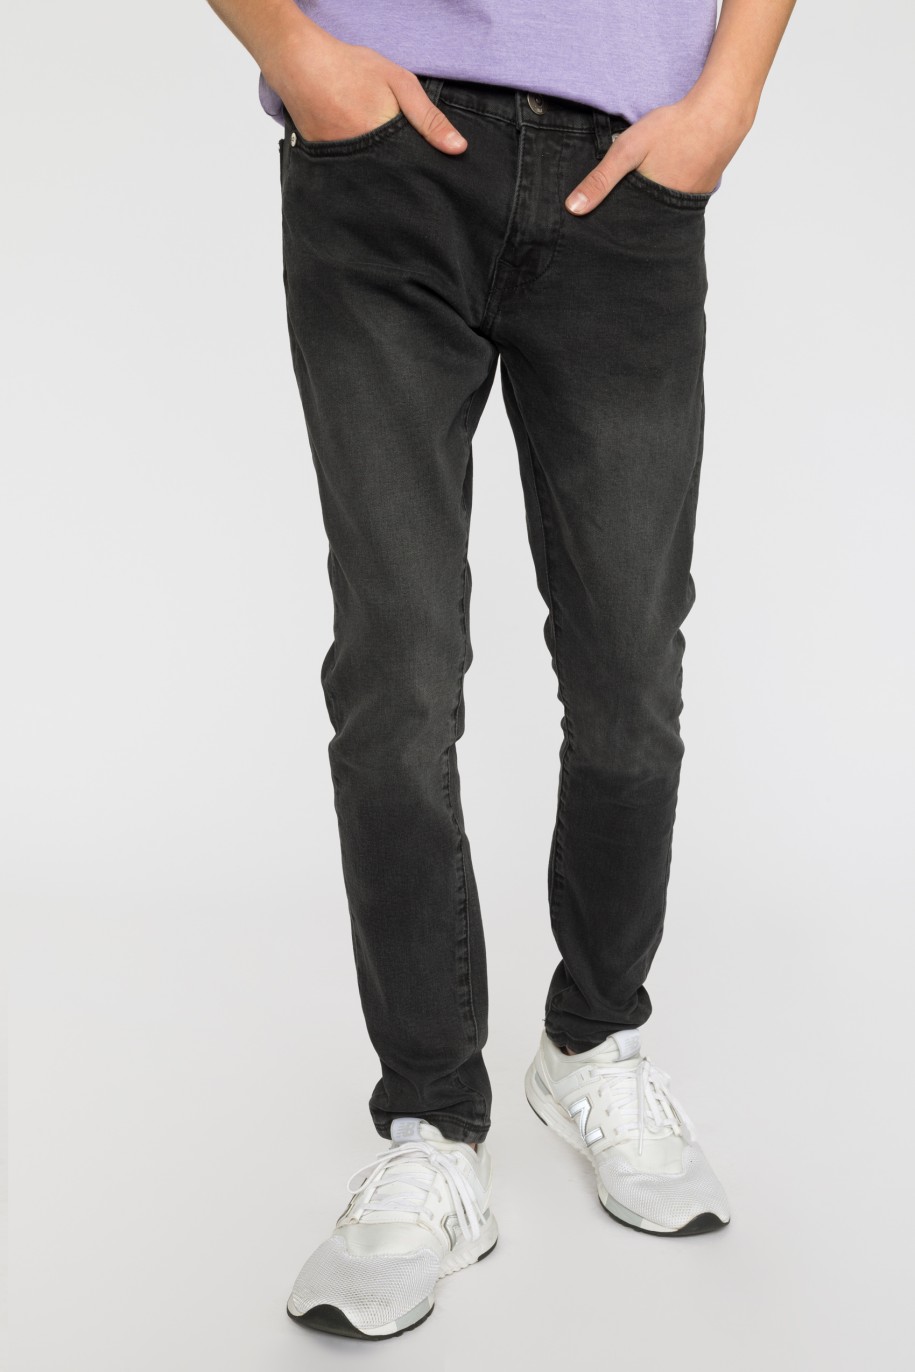 Czarne jeansowe zwężane ku dołowi spodnie dla chłopaka - 33443